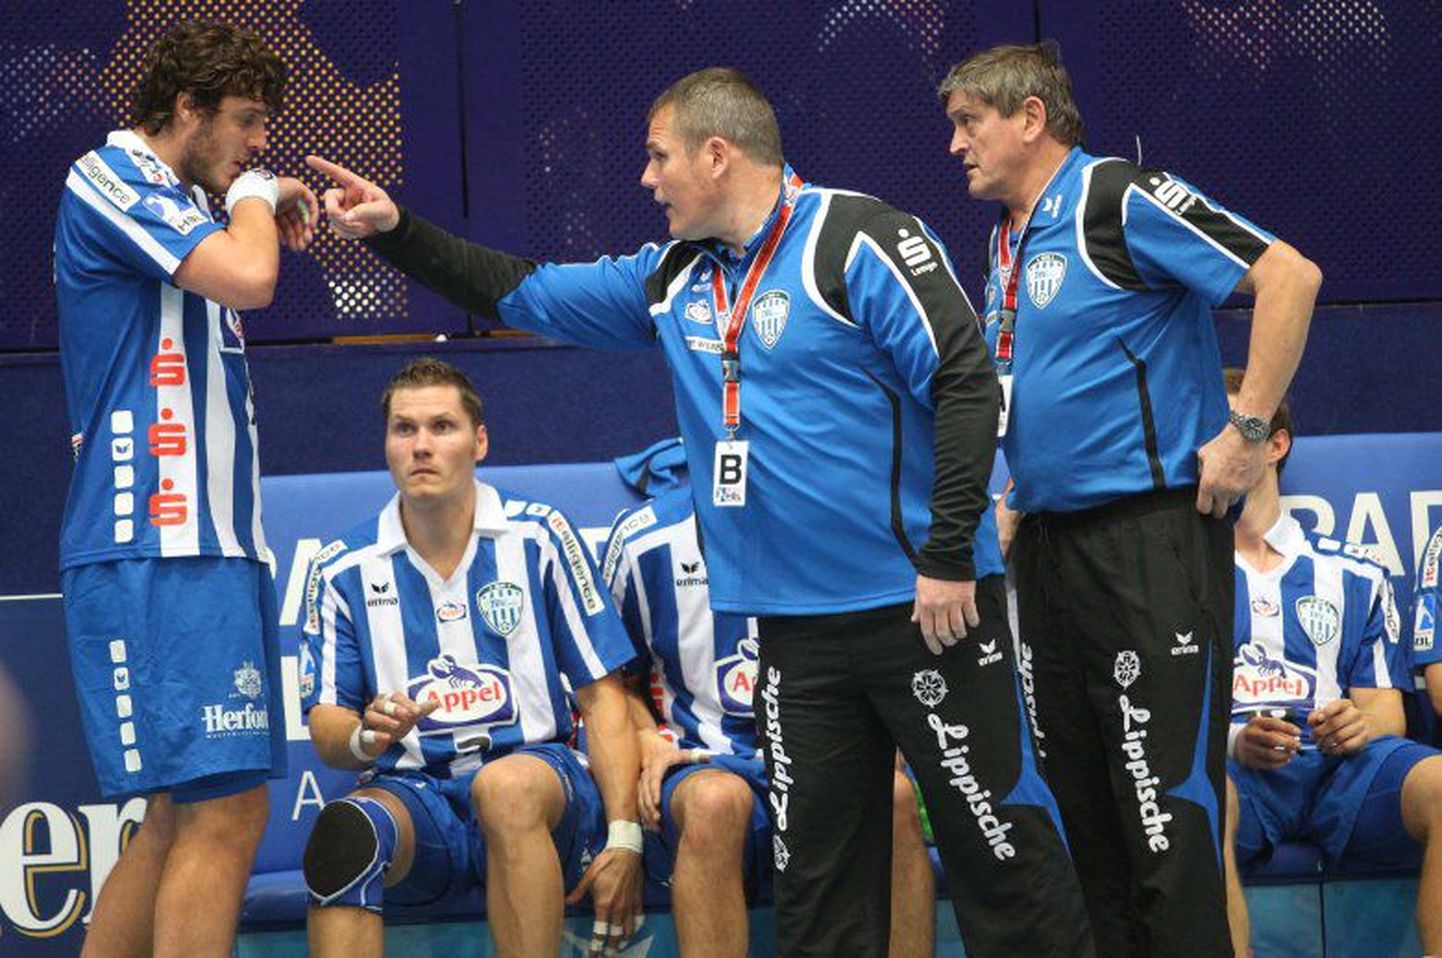 Mait Patrail (vasakul) kuulamas Lemgo TBV peatreeneri Dirk Beuchleri näpunäiteid.